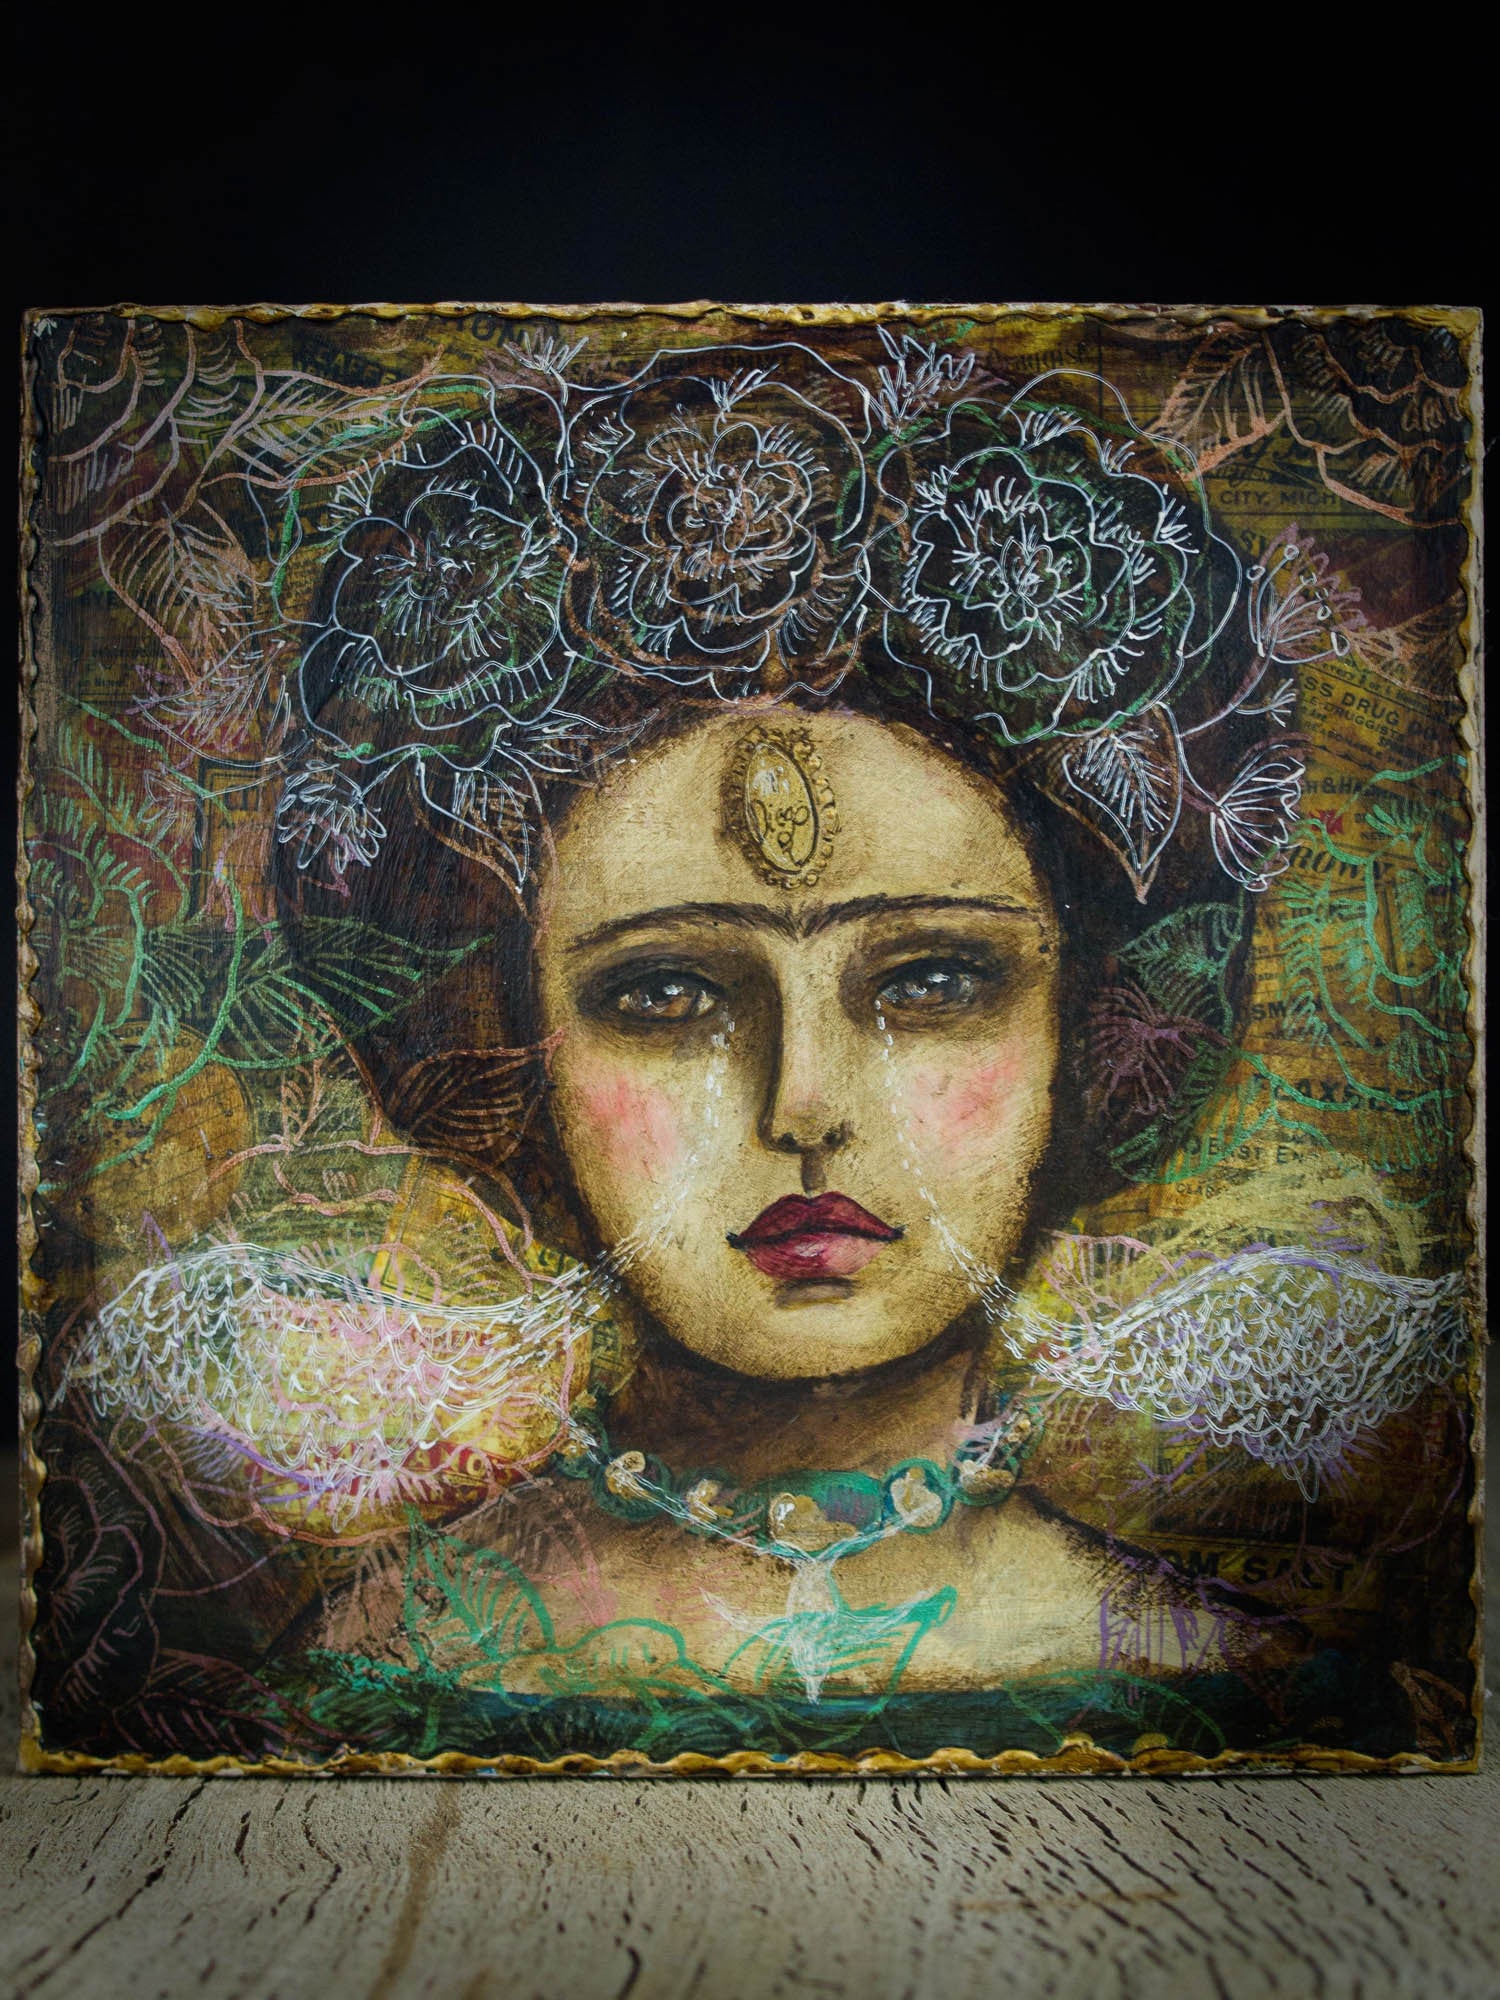 Frida has wings on a fantastic mixed media surreal painting by Danita ...